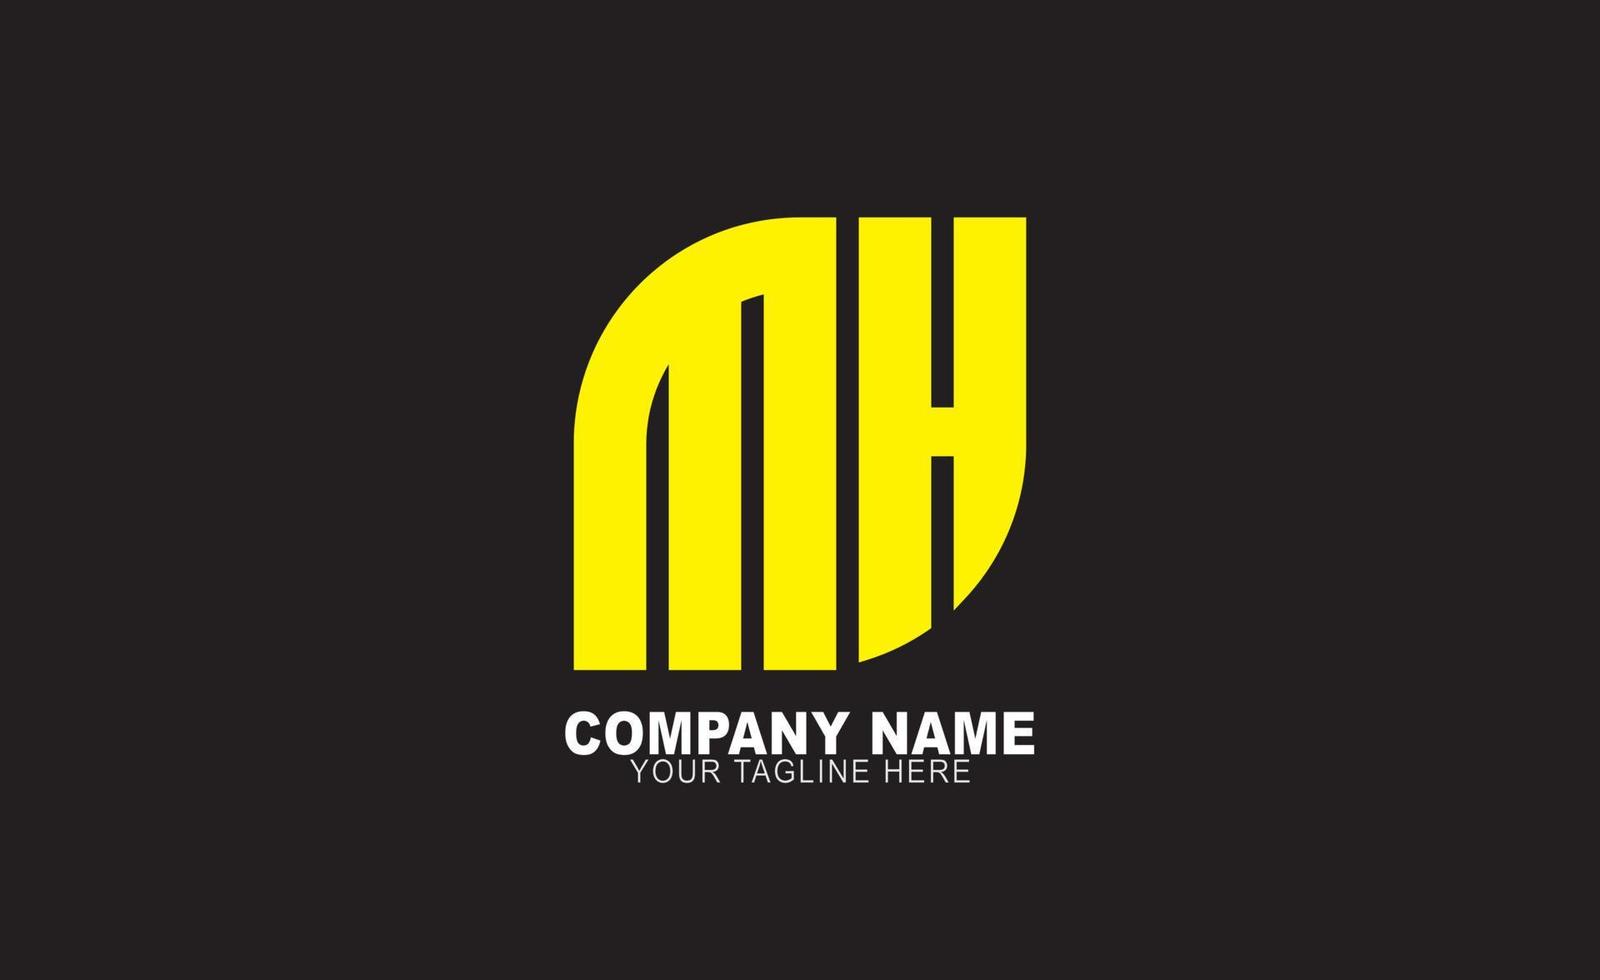 Mh logo design vector templates